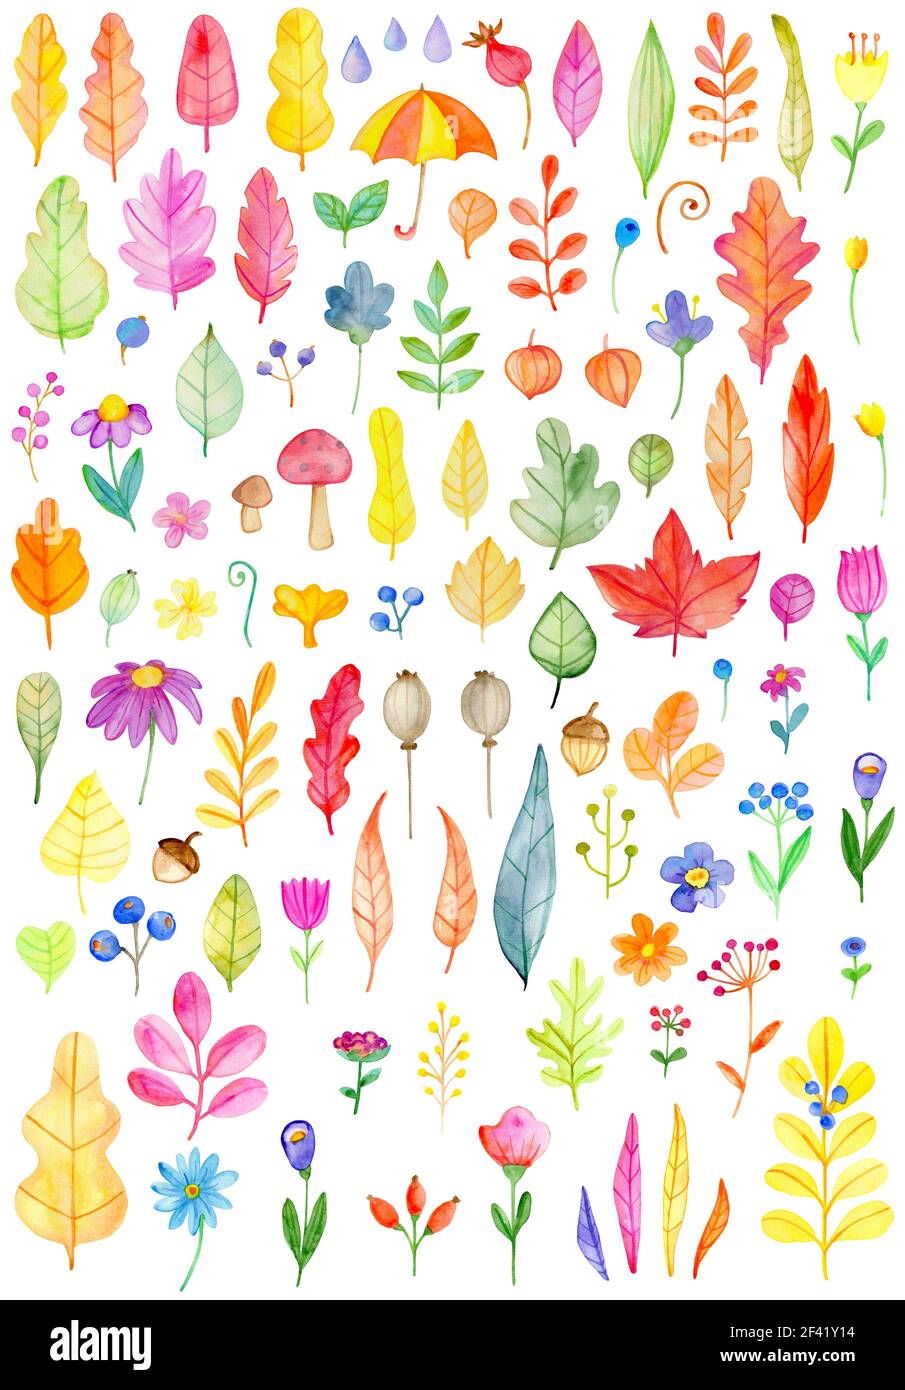 Aquarelle de fleurs et de feuilles sur un fond blanc. Botaniques dessinés à la main, des éléments de conception d'automne Banque D'Images